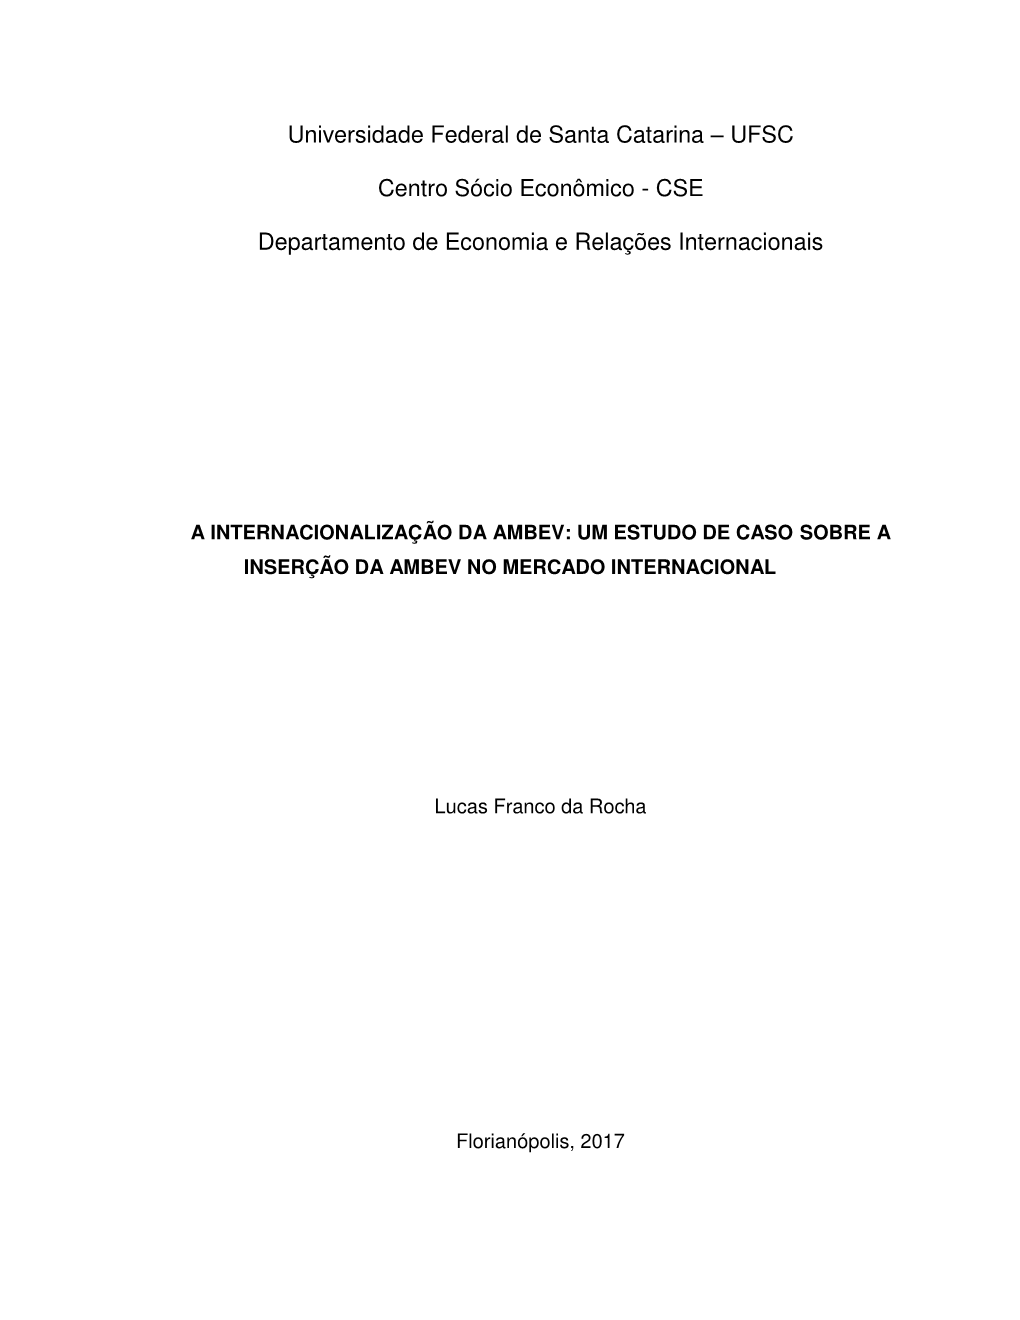 A Internacionalização Da Ambev: Um Estudo De Caso Sobre a Inserção Da Ambev No Mercado Internacional